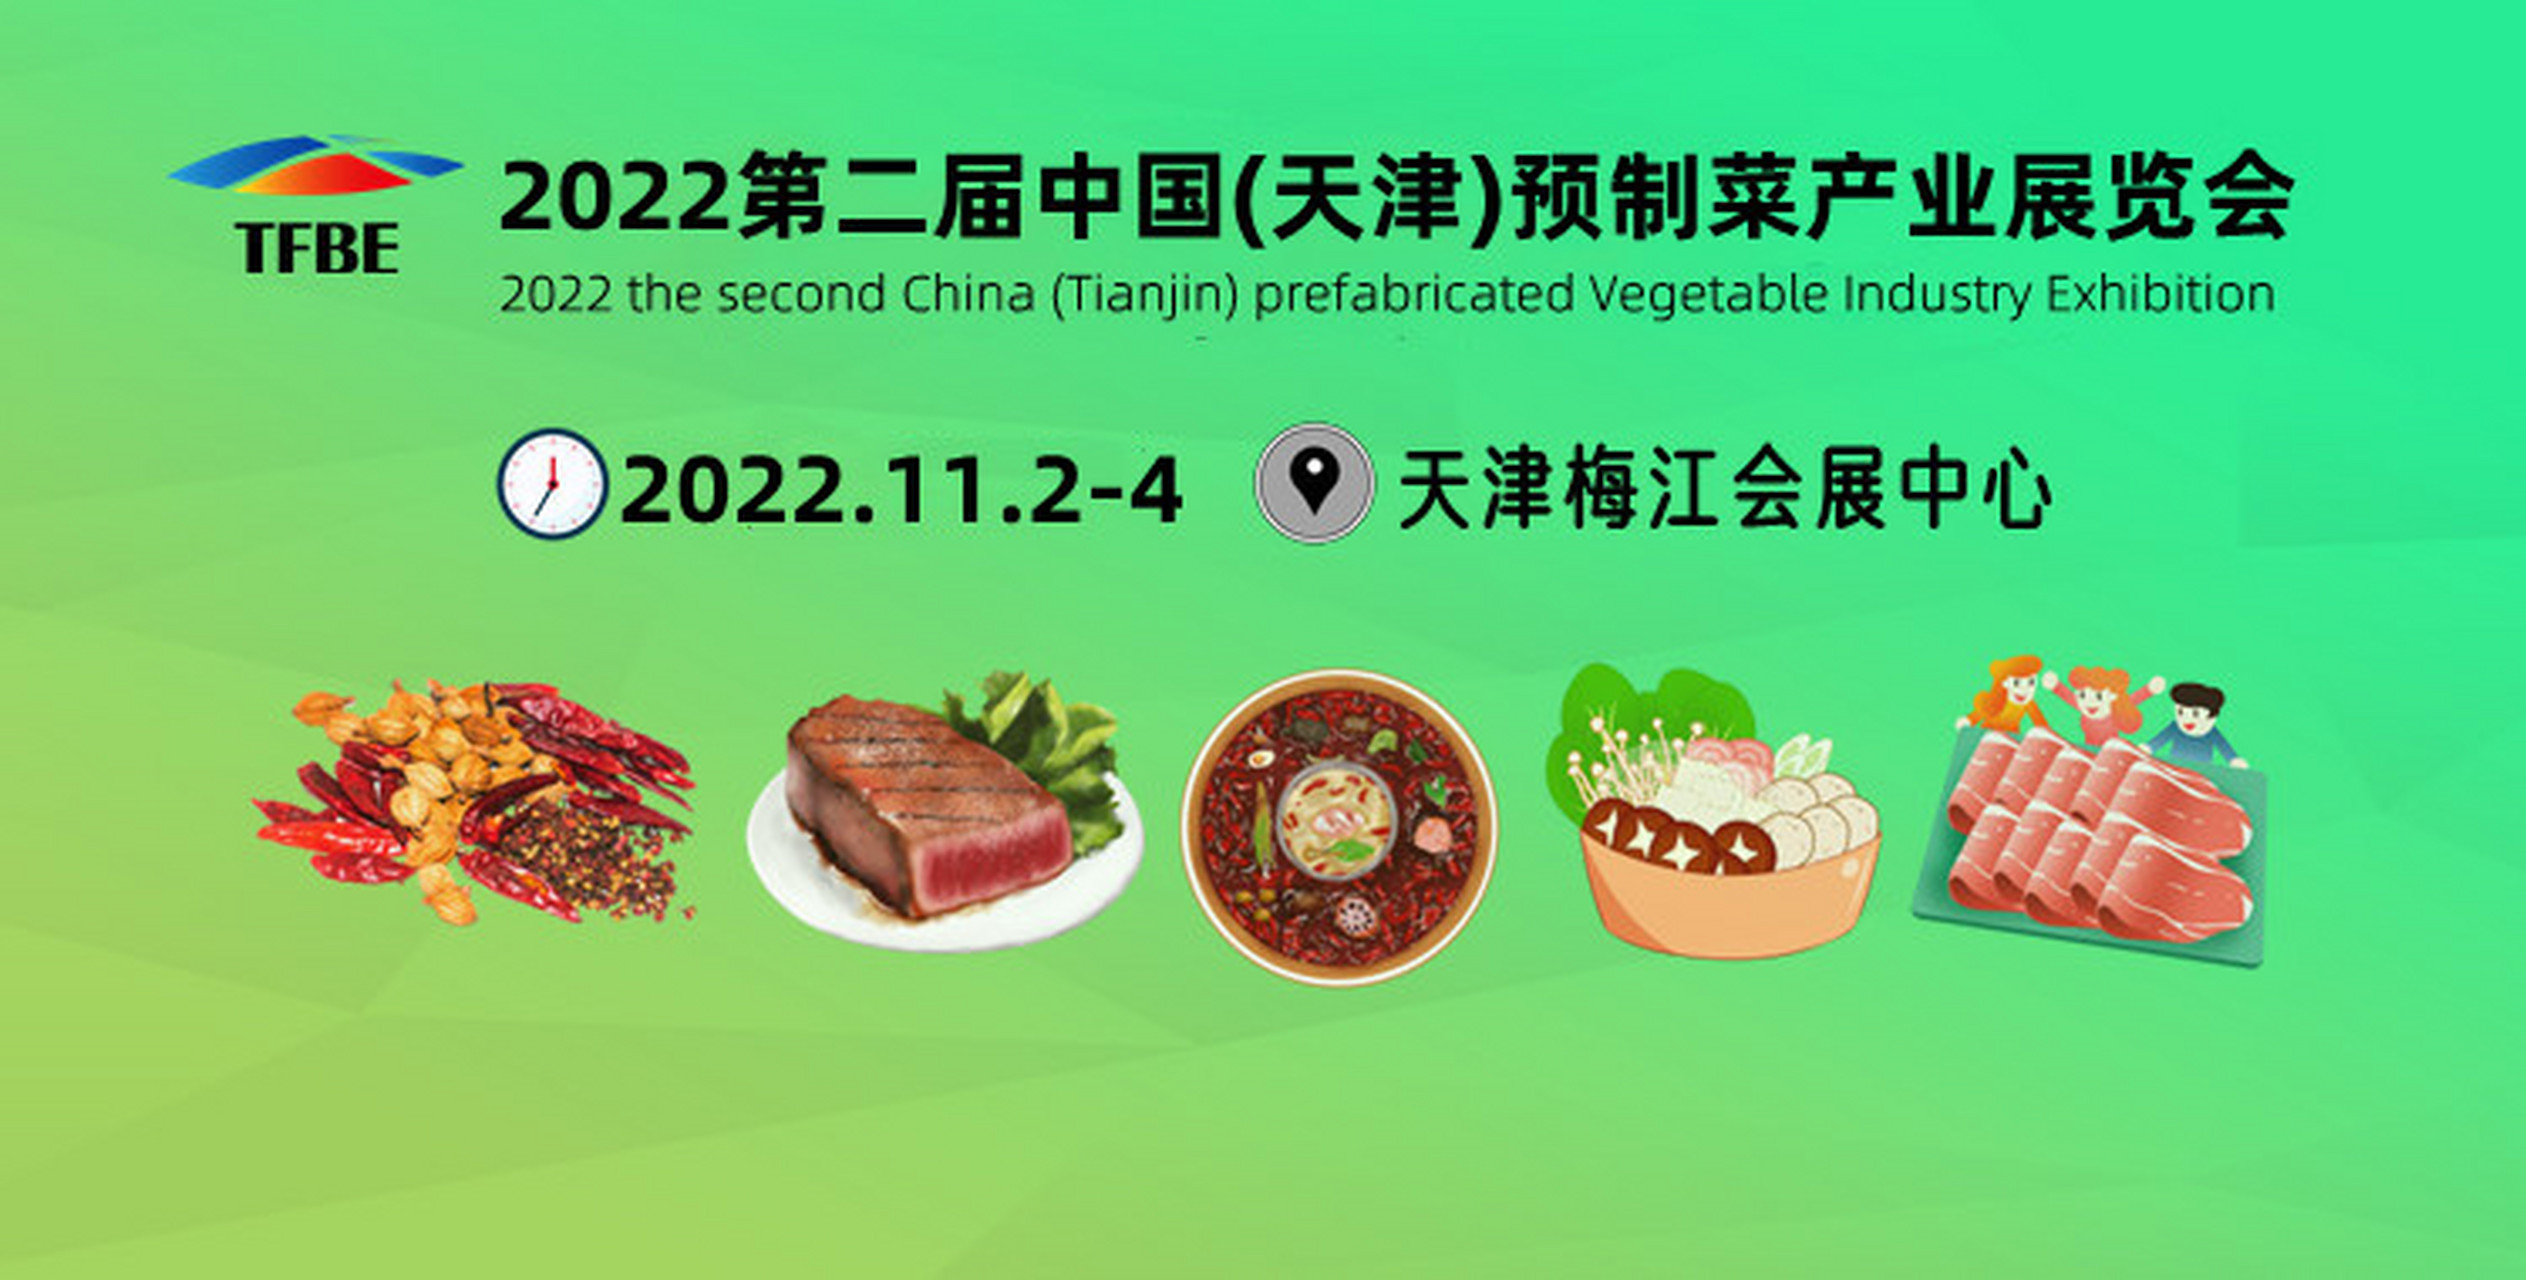 预制菜展#预食展 11月2-4日/2022天津预制菜产业展览会将在天津